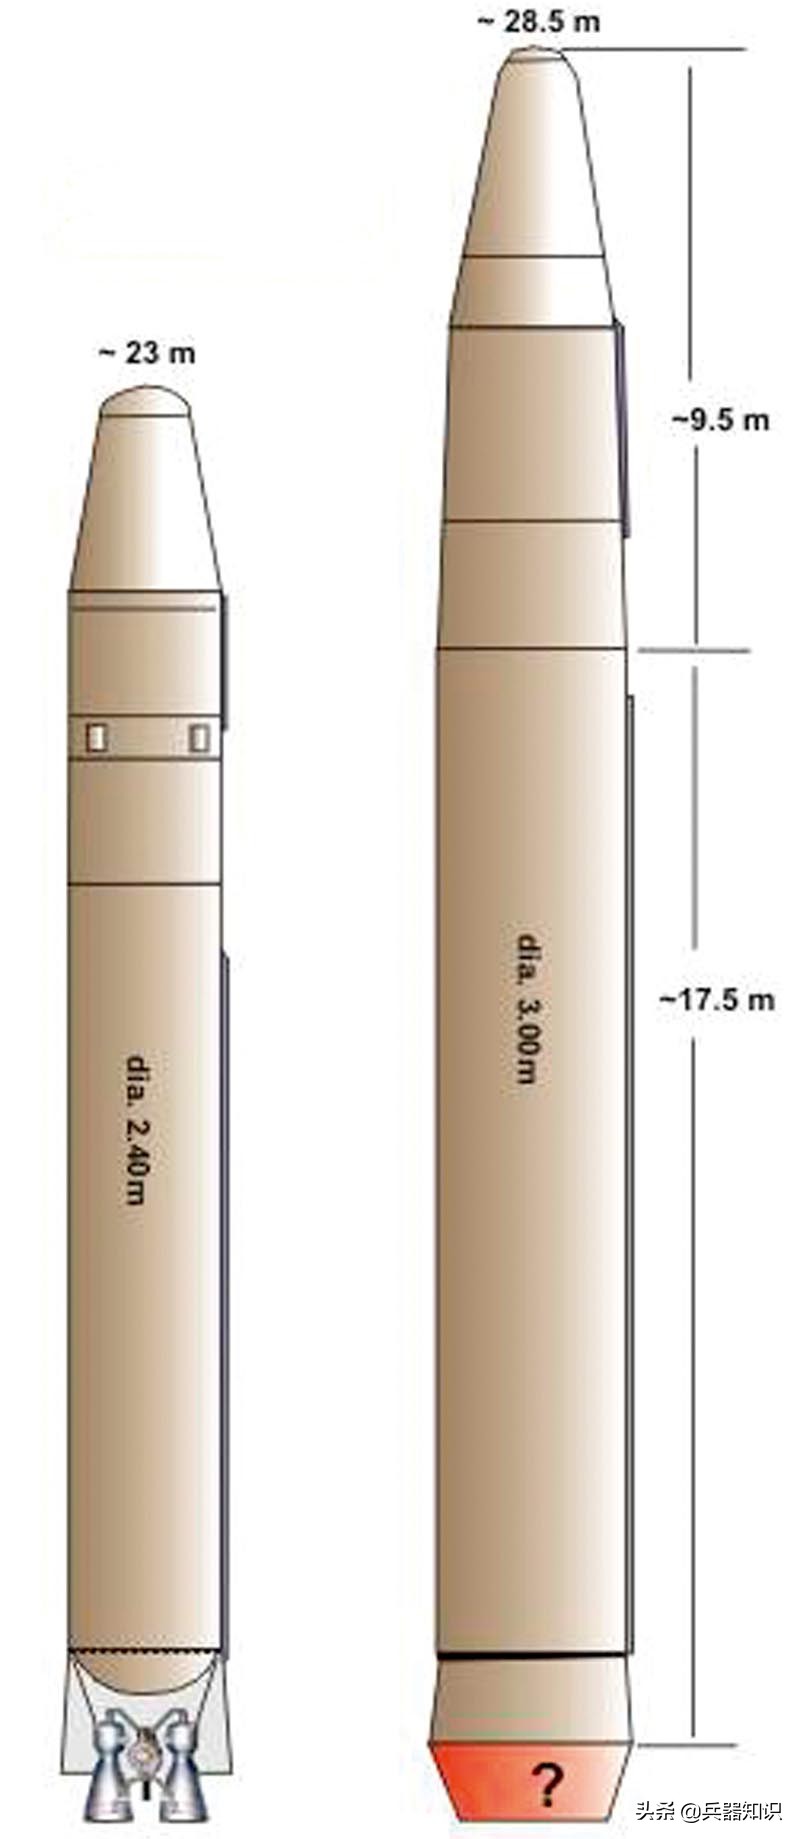 朝鲜“火星”16弹道导弹 尺寸已超“白杨”M